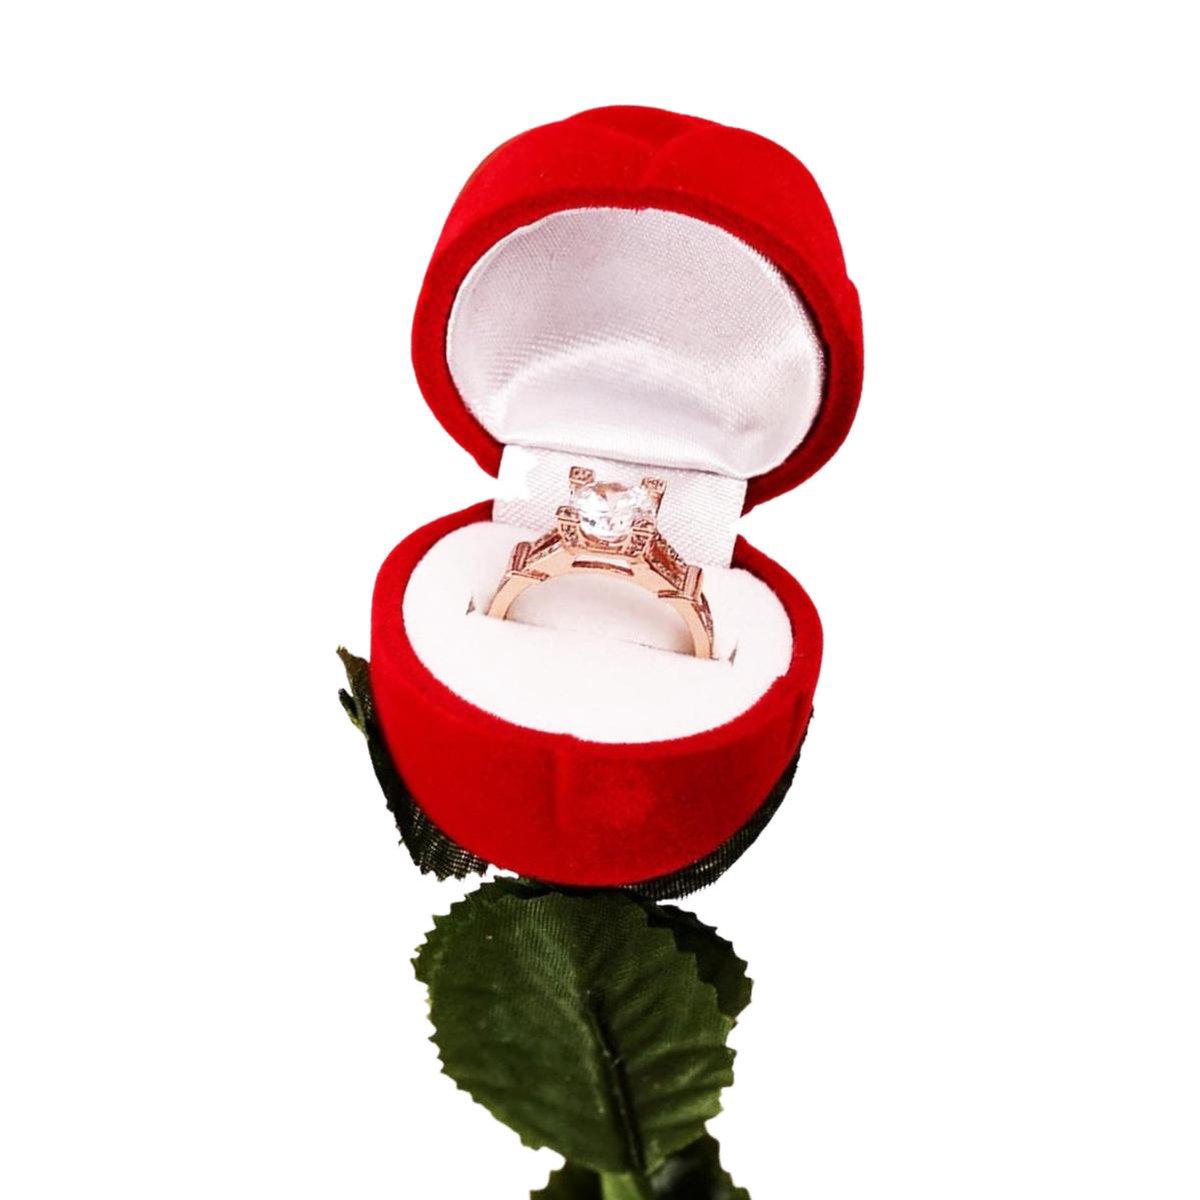 Sieraden doosje - ring doosje - rode roos - gratis rood doosje - rode roos sieradendoosje - huwelijk - ring aanzoek doosje - Valentijn cadeau vrouw - Valentijn - sieraden doosje - Valentijn cadeau voor hem - bruiloft - doosje sieraden - aanzoek doos - luckforyou